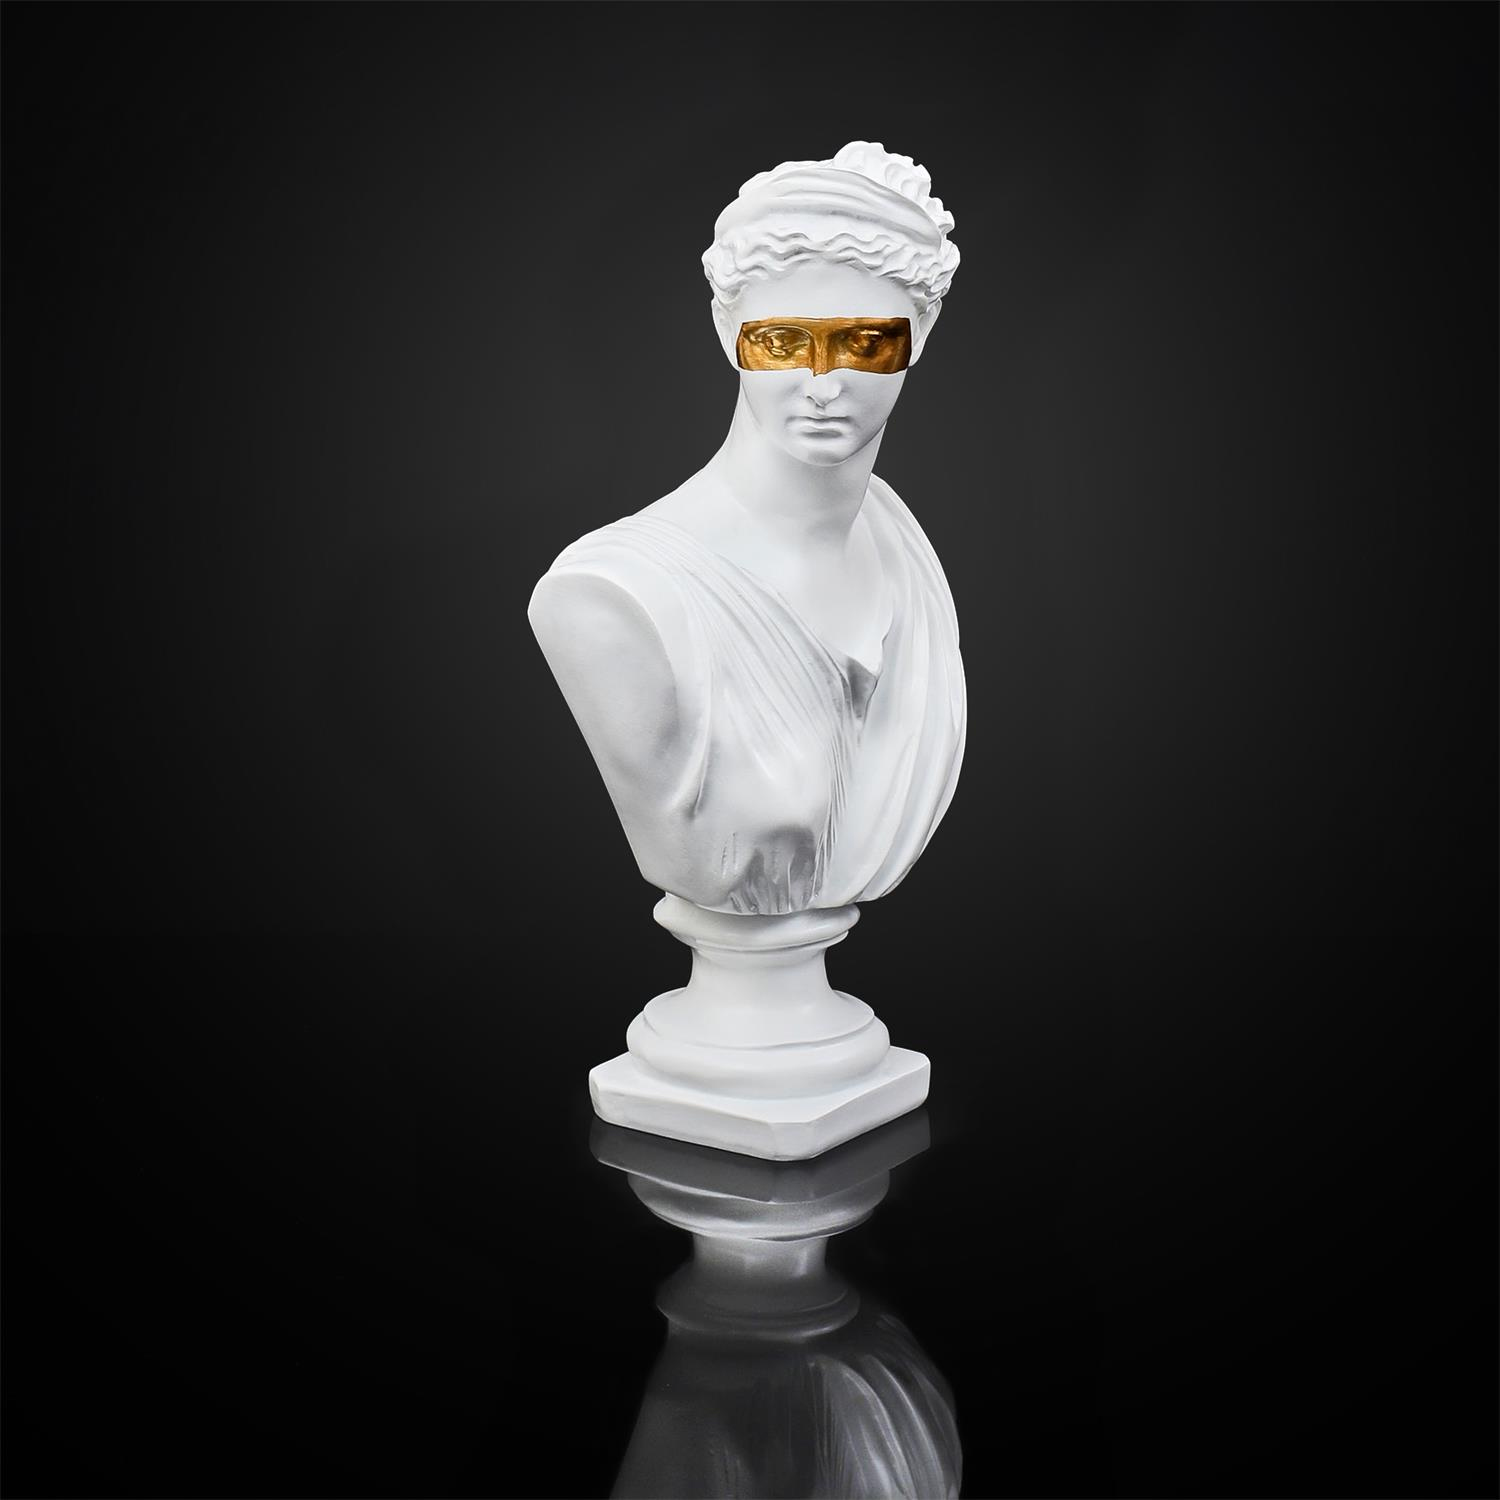 Statut buste decoratif resine deco blanc or figure original masque dore royal femme homme grec art monde sculpture grecque figurine decoration mannequin socle contemporain 6